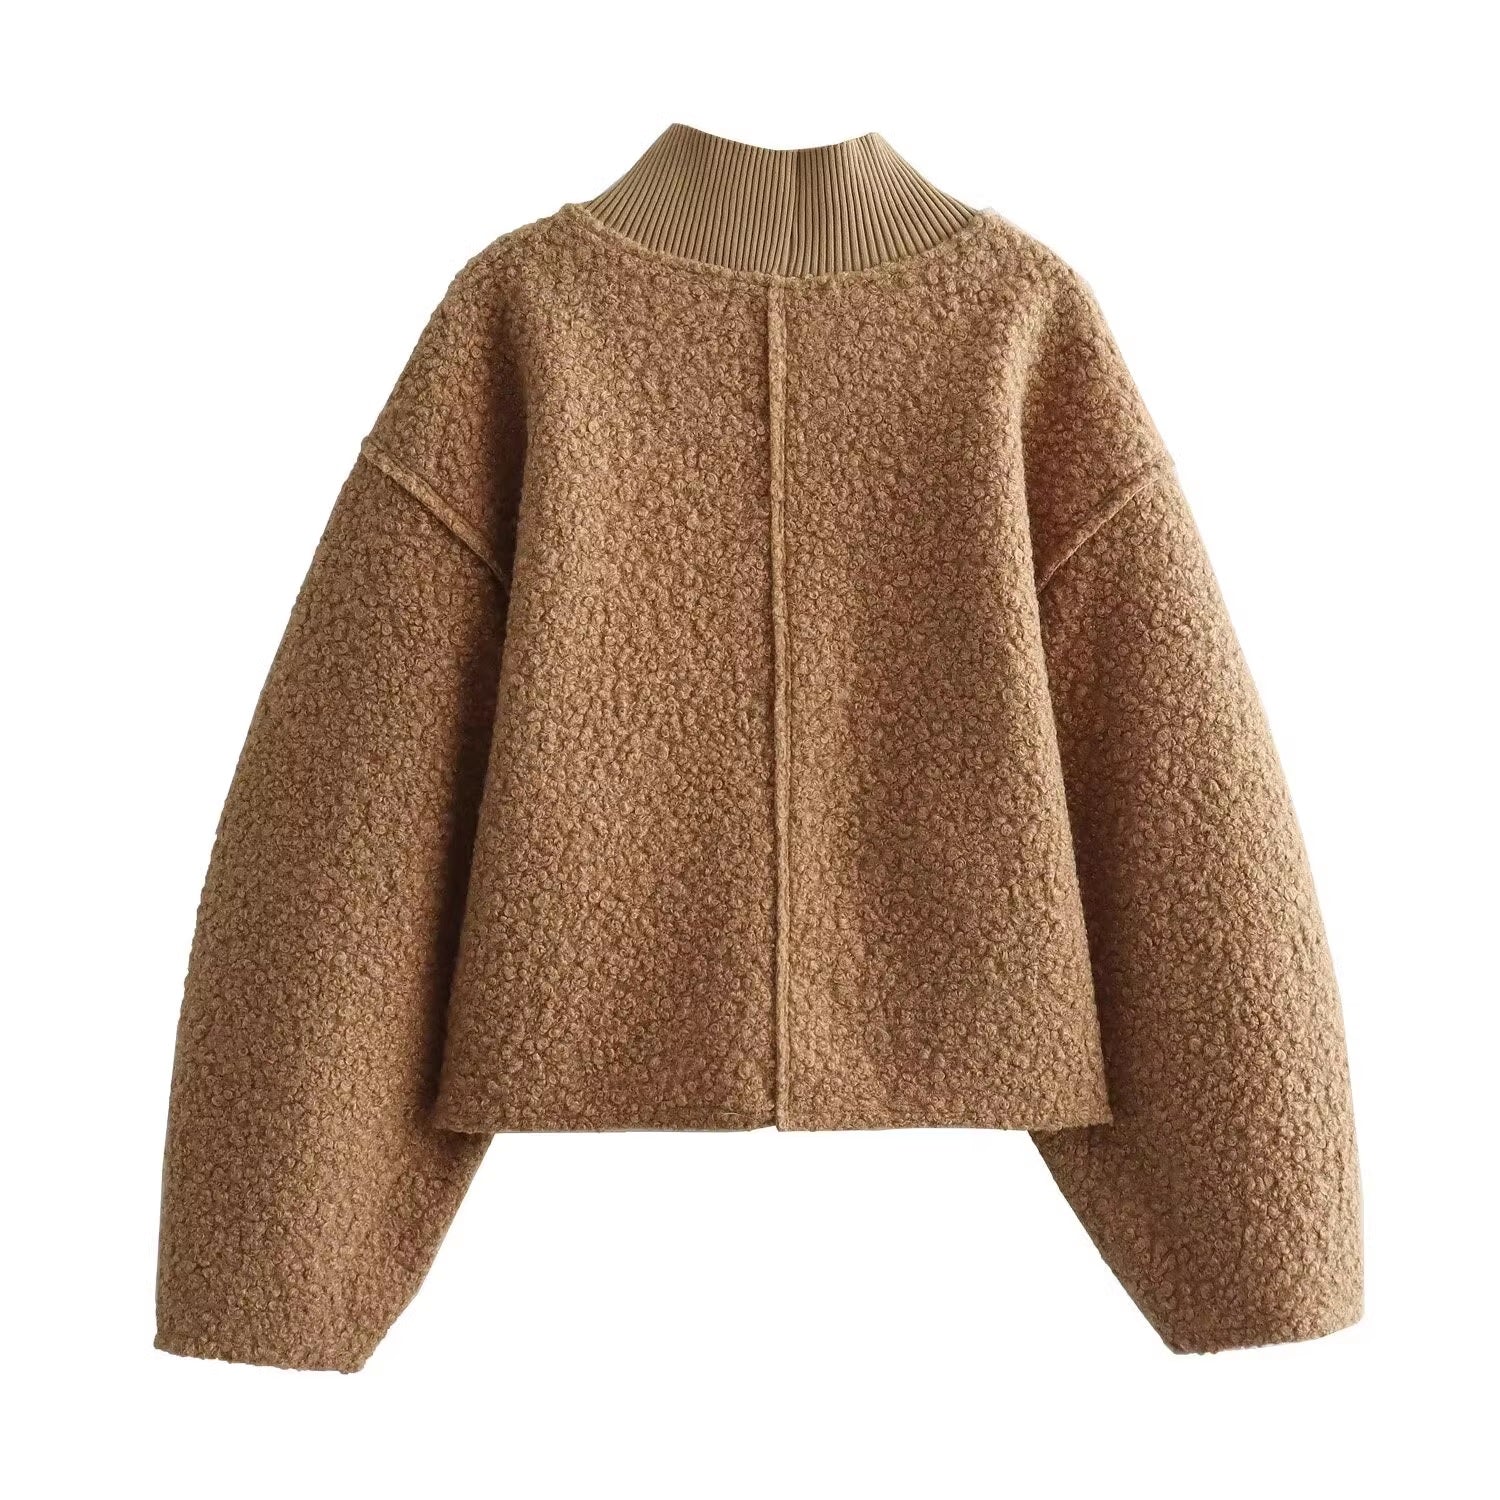 Дамски пуловер Brown Bouclé 24'-Дамски пуловер Brown Bouclé 24'-Thedresscode